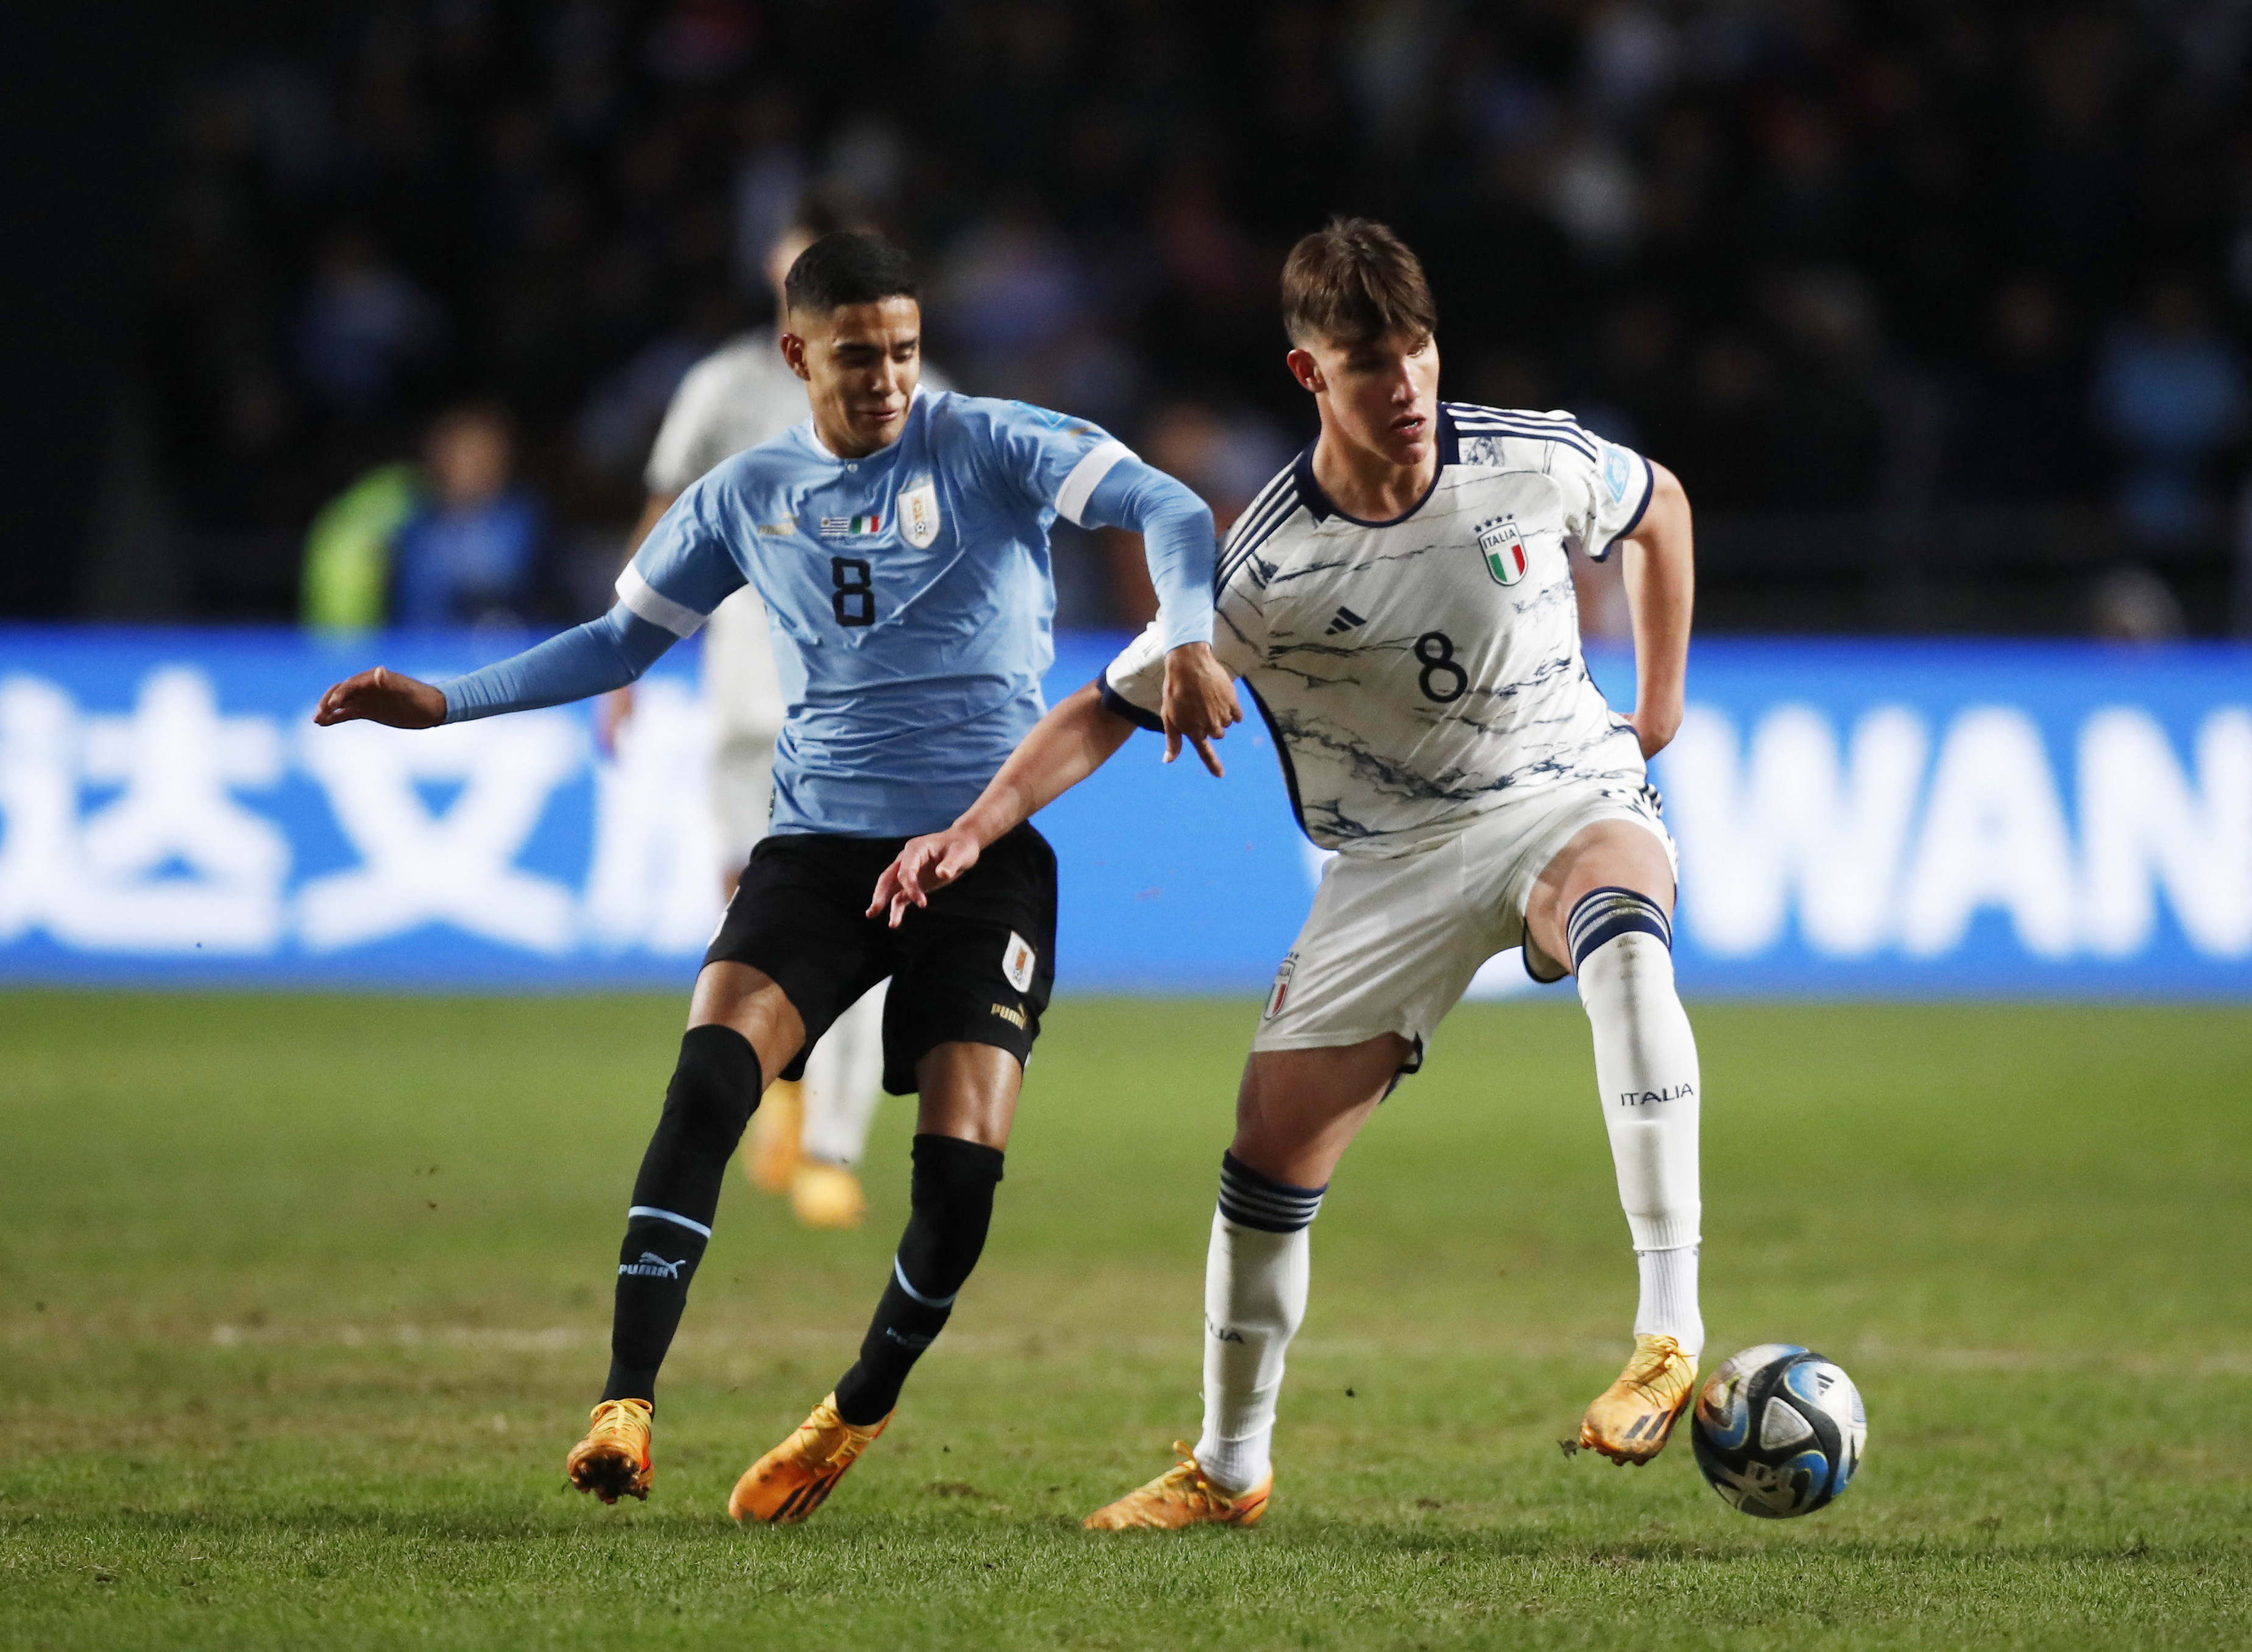 צ'זארה קסאדיי נבחרת איטליה מול רודריגס צ'גאס נבחרת אורוגוואי